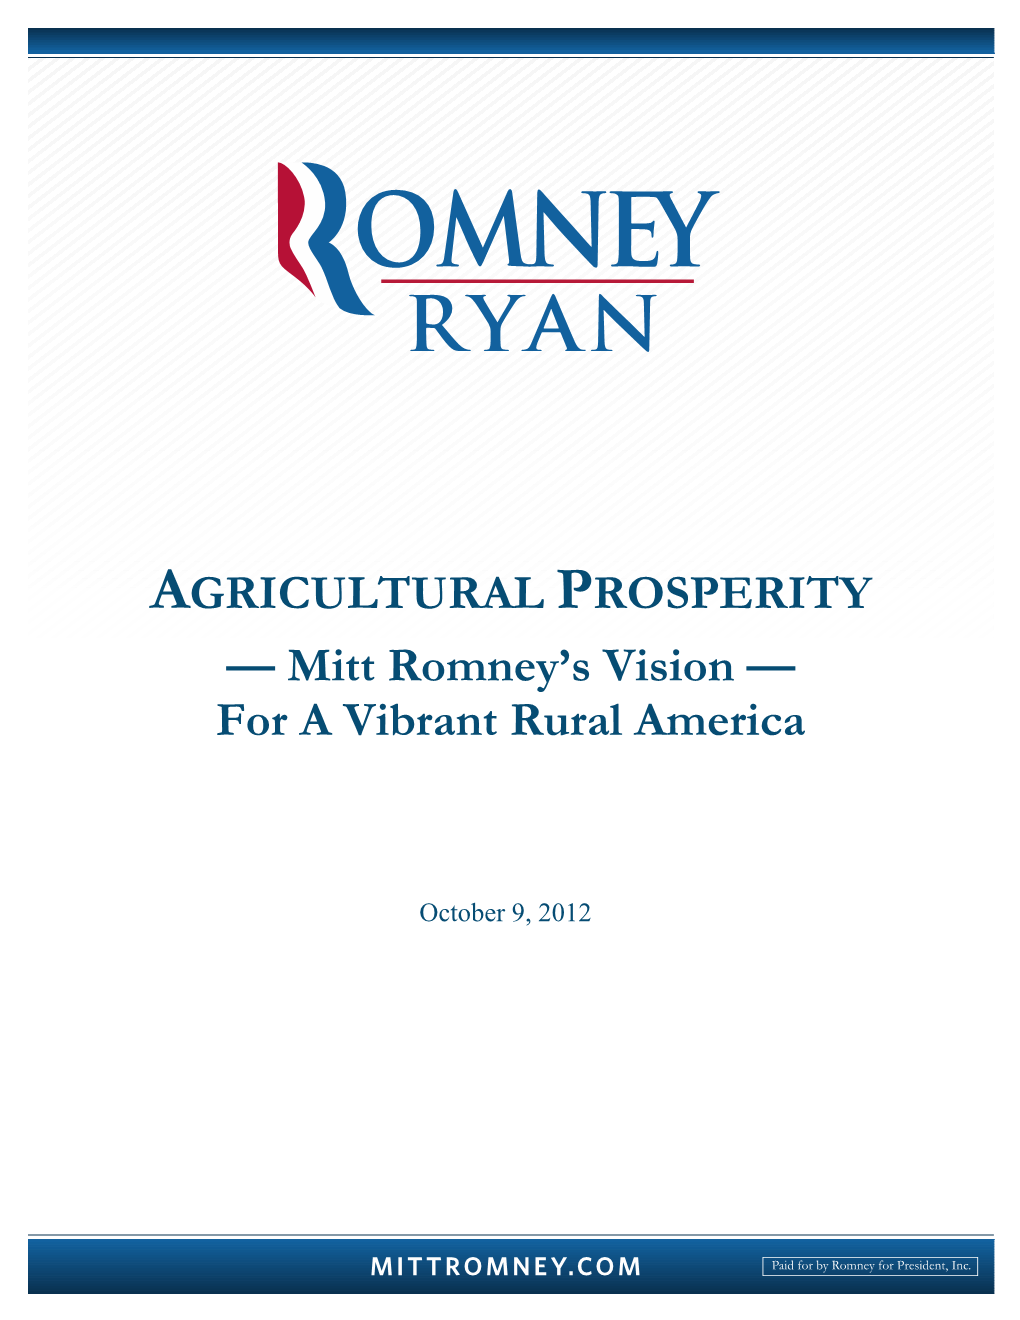 Mitt Romney's Vision